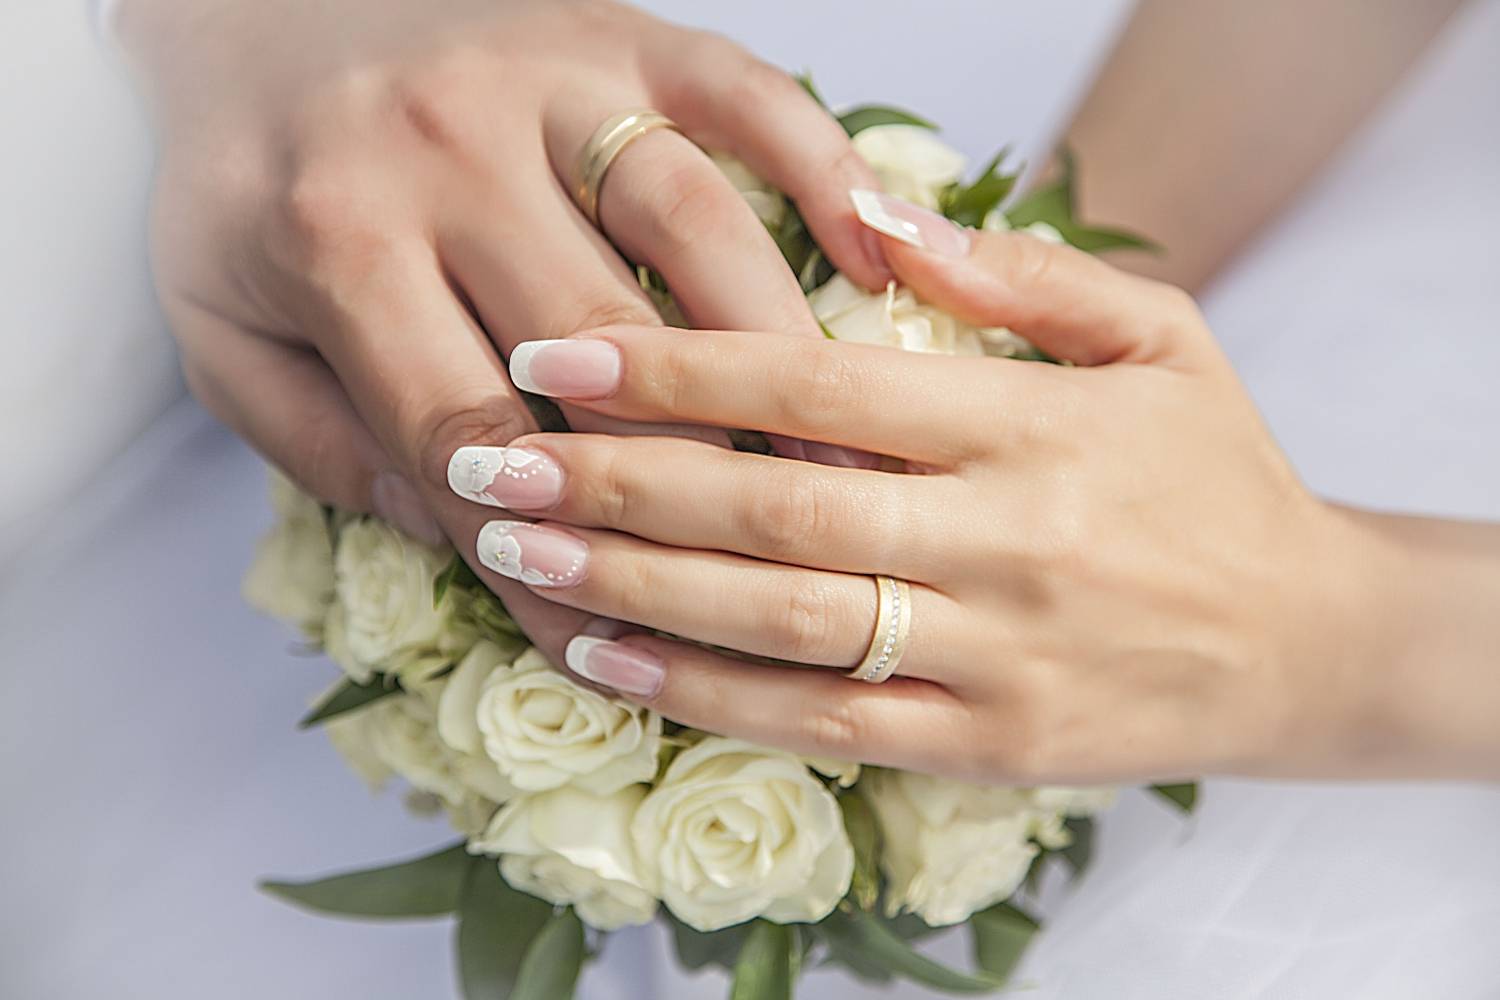 Свадебный педикюр: каким он должен быть, какой цвет выбрать, идеи и советы для невест (с фото), когда делать и как ухаживать, стоимость педикюра на свадьбу